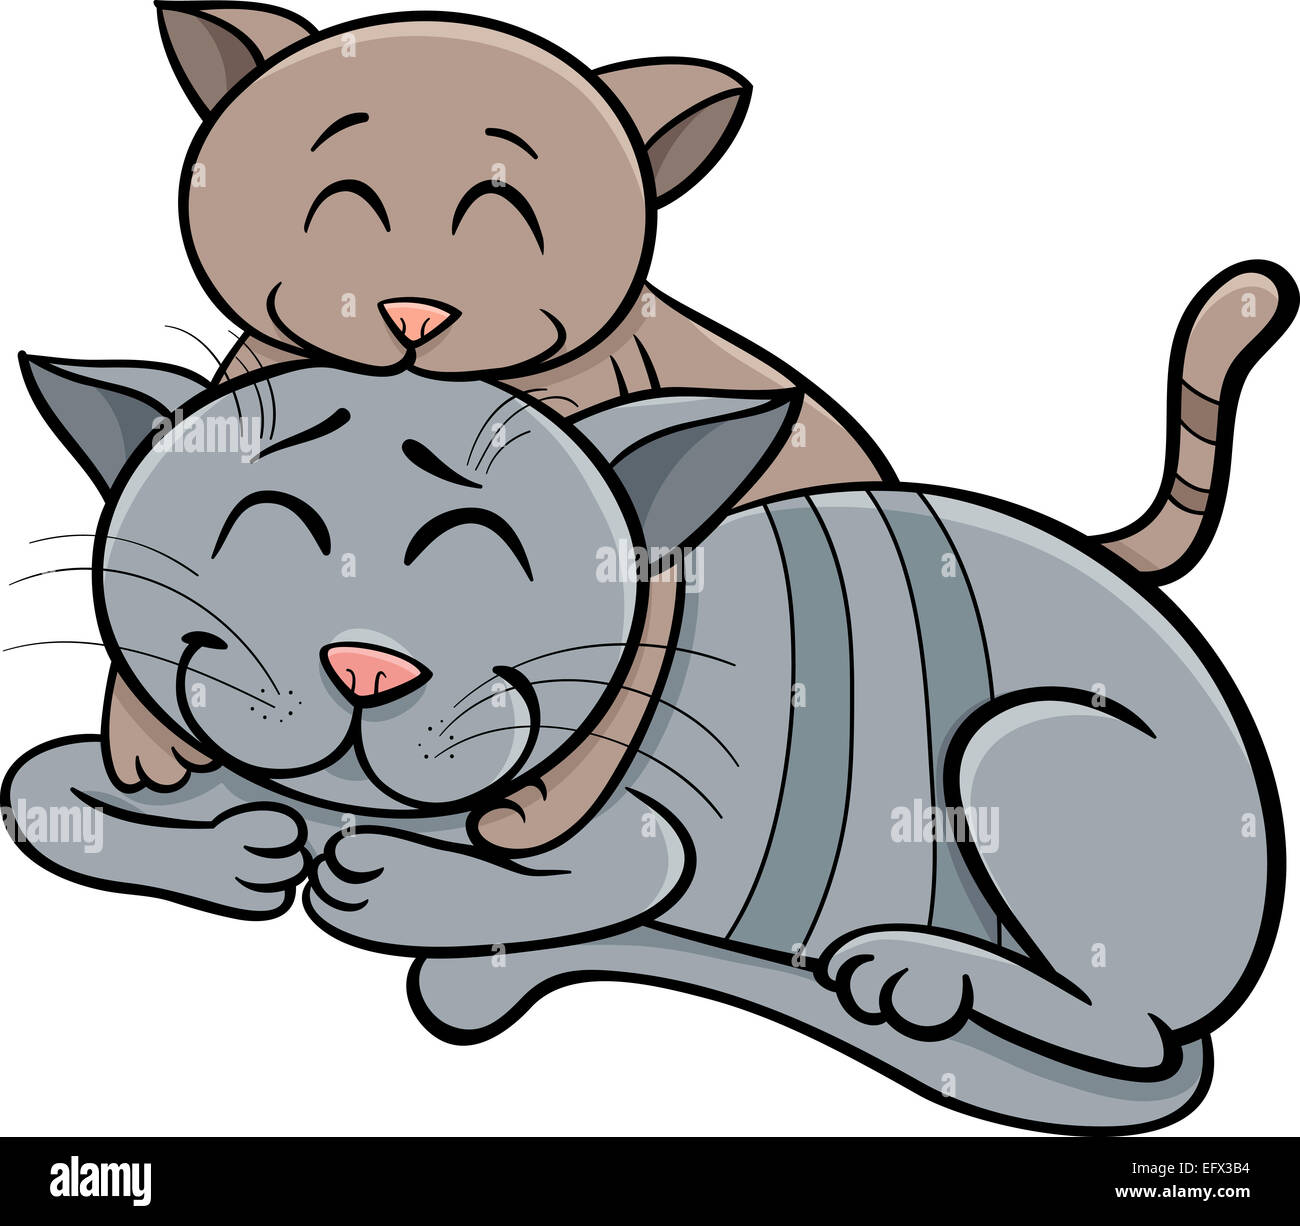 Cartoon Illustration of Happy Cat Mother with Little Kitten Stock Photo